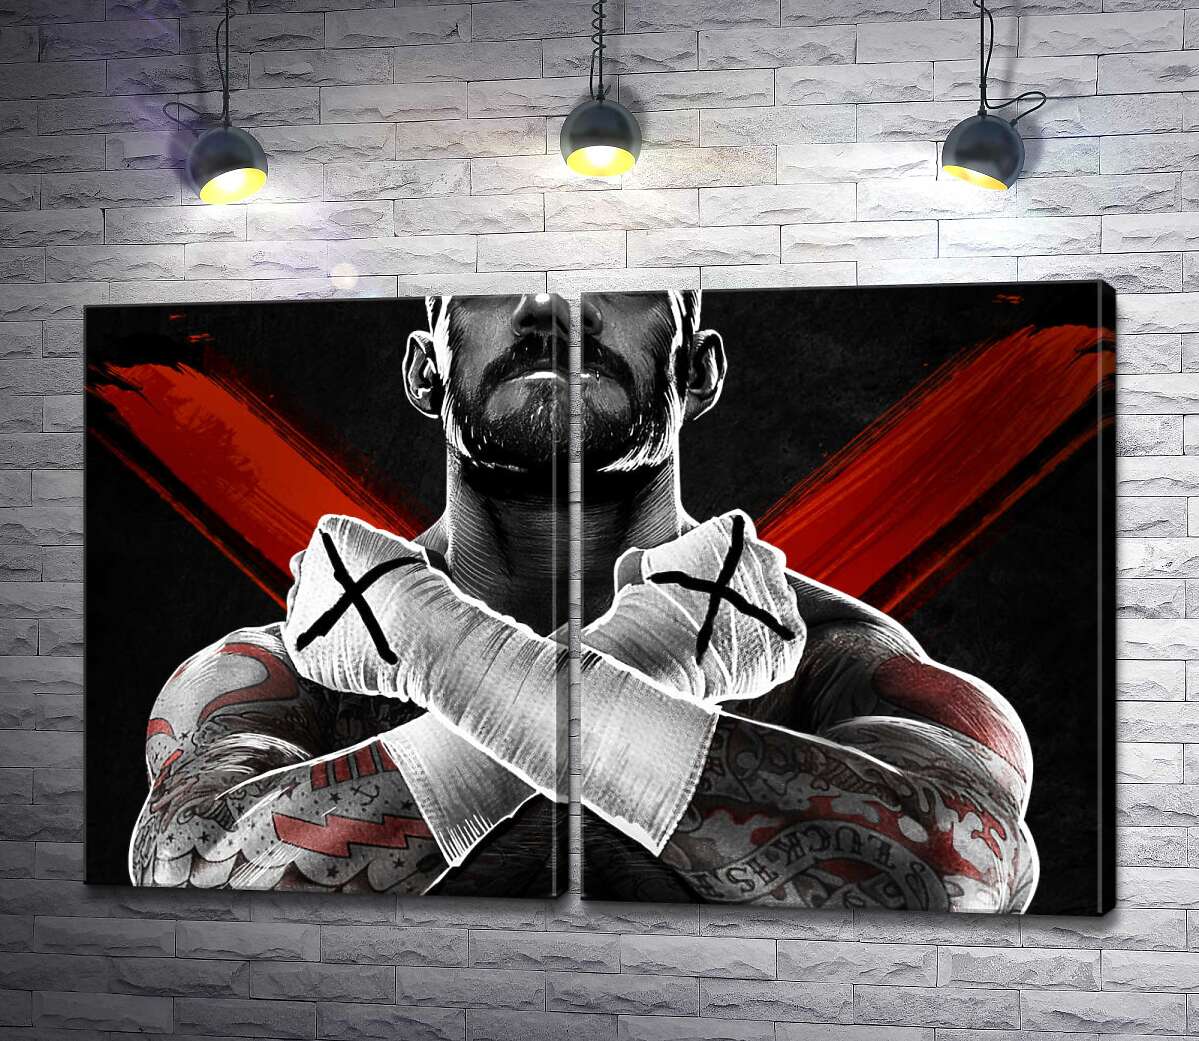 модульная картина Горы мышц американского рестлера Си Эм Панка (CM Punk)